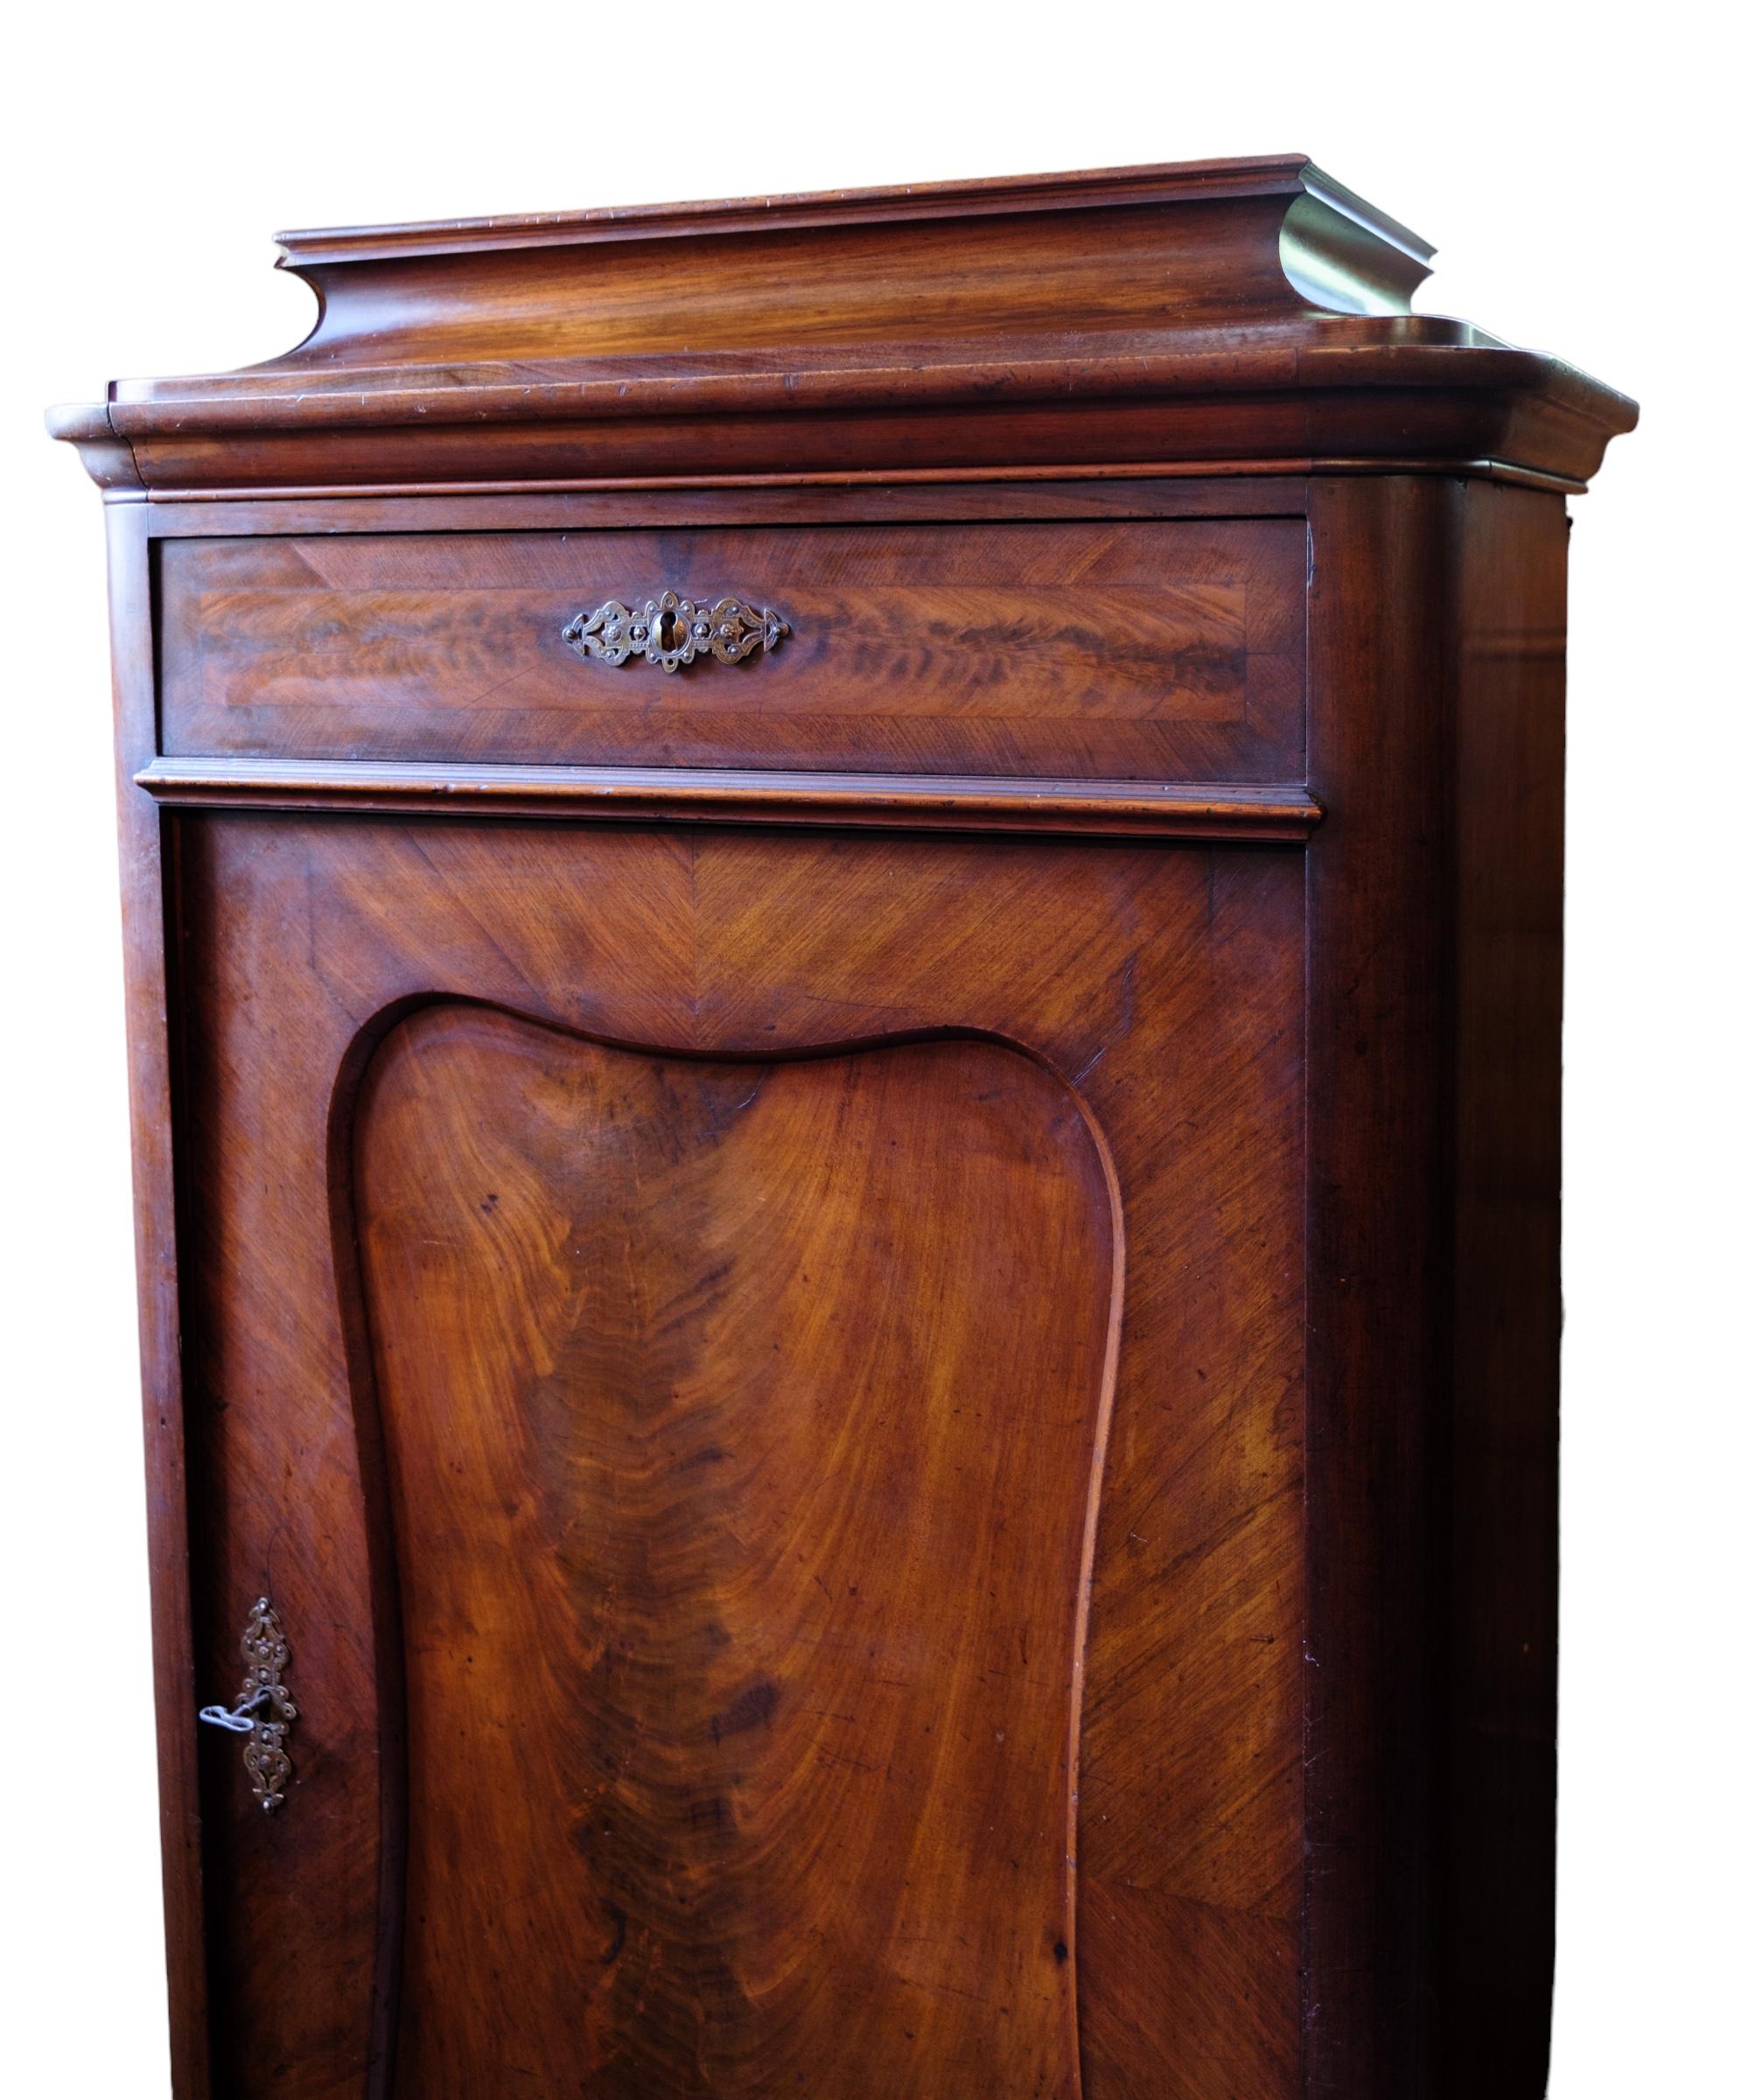 Hochschrank aus poliertem Nussbaum, schöner antiker Zustand mit 2 Schubladen und einer Tür mit Einlegeböden aus den 1850er Jahren
Abmessungen in cm: H:150 B:71 T:40